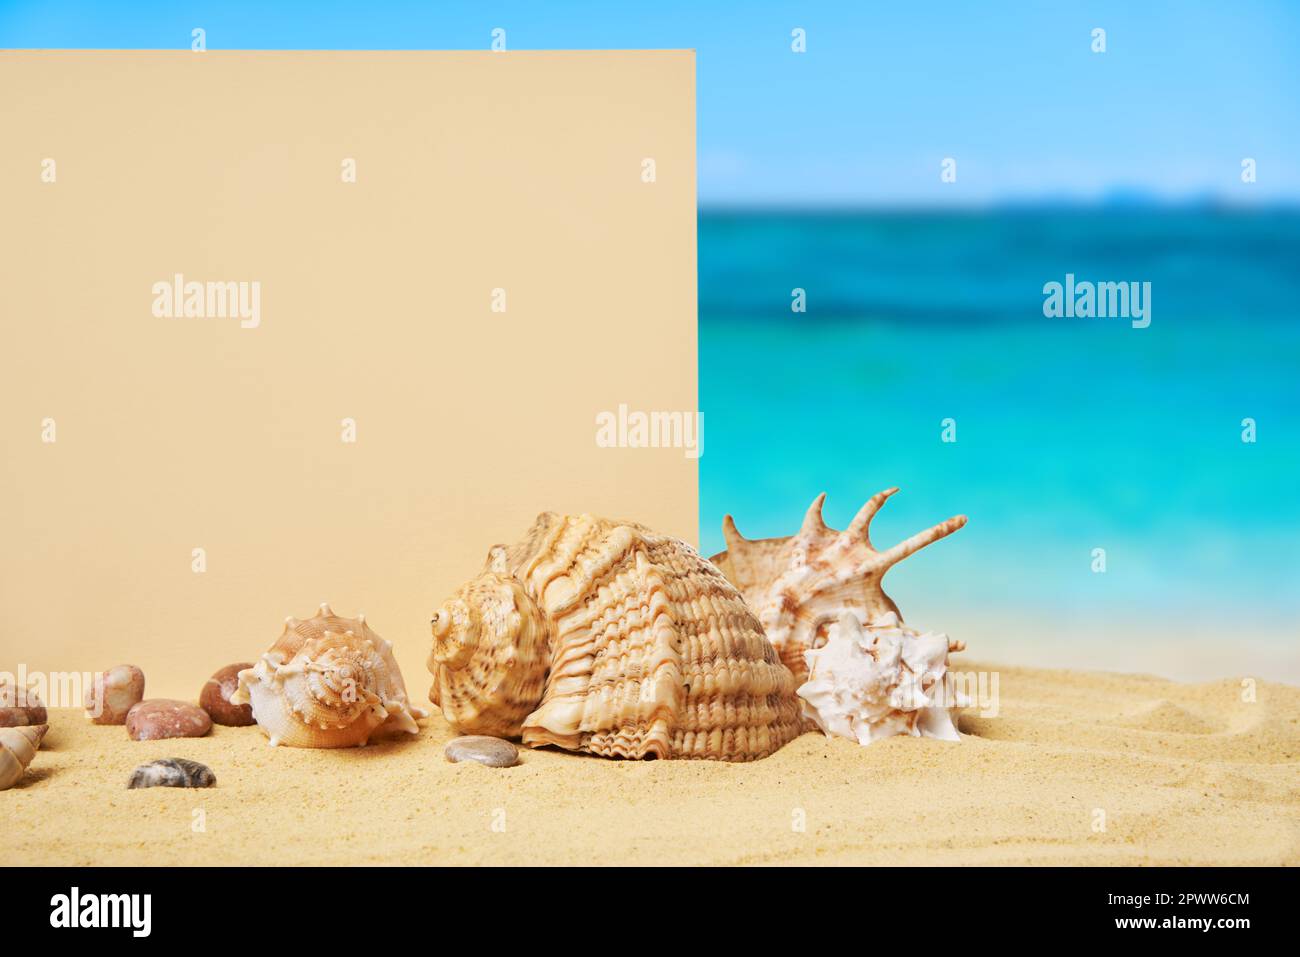 Invito o biglietto d'auguri mockup con conchiglie e stelle marine sulla spiaggia di sabbia estiva sullo sfondo dell'oceano. Concetto di vacanza, spazio copia Foto Stock